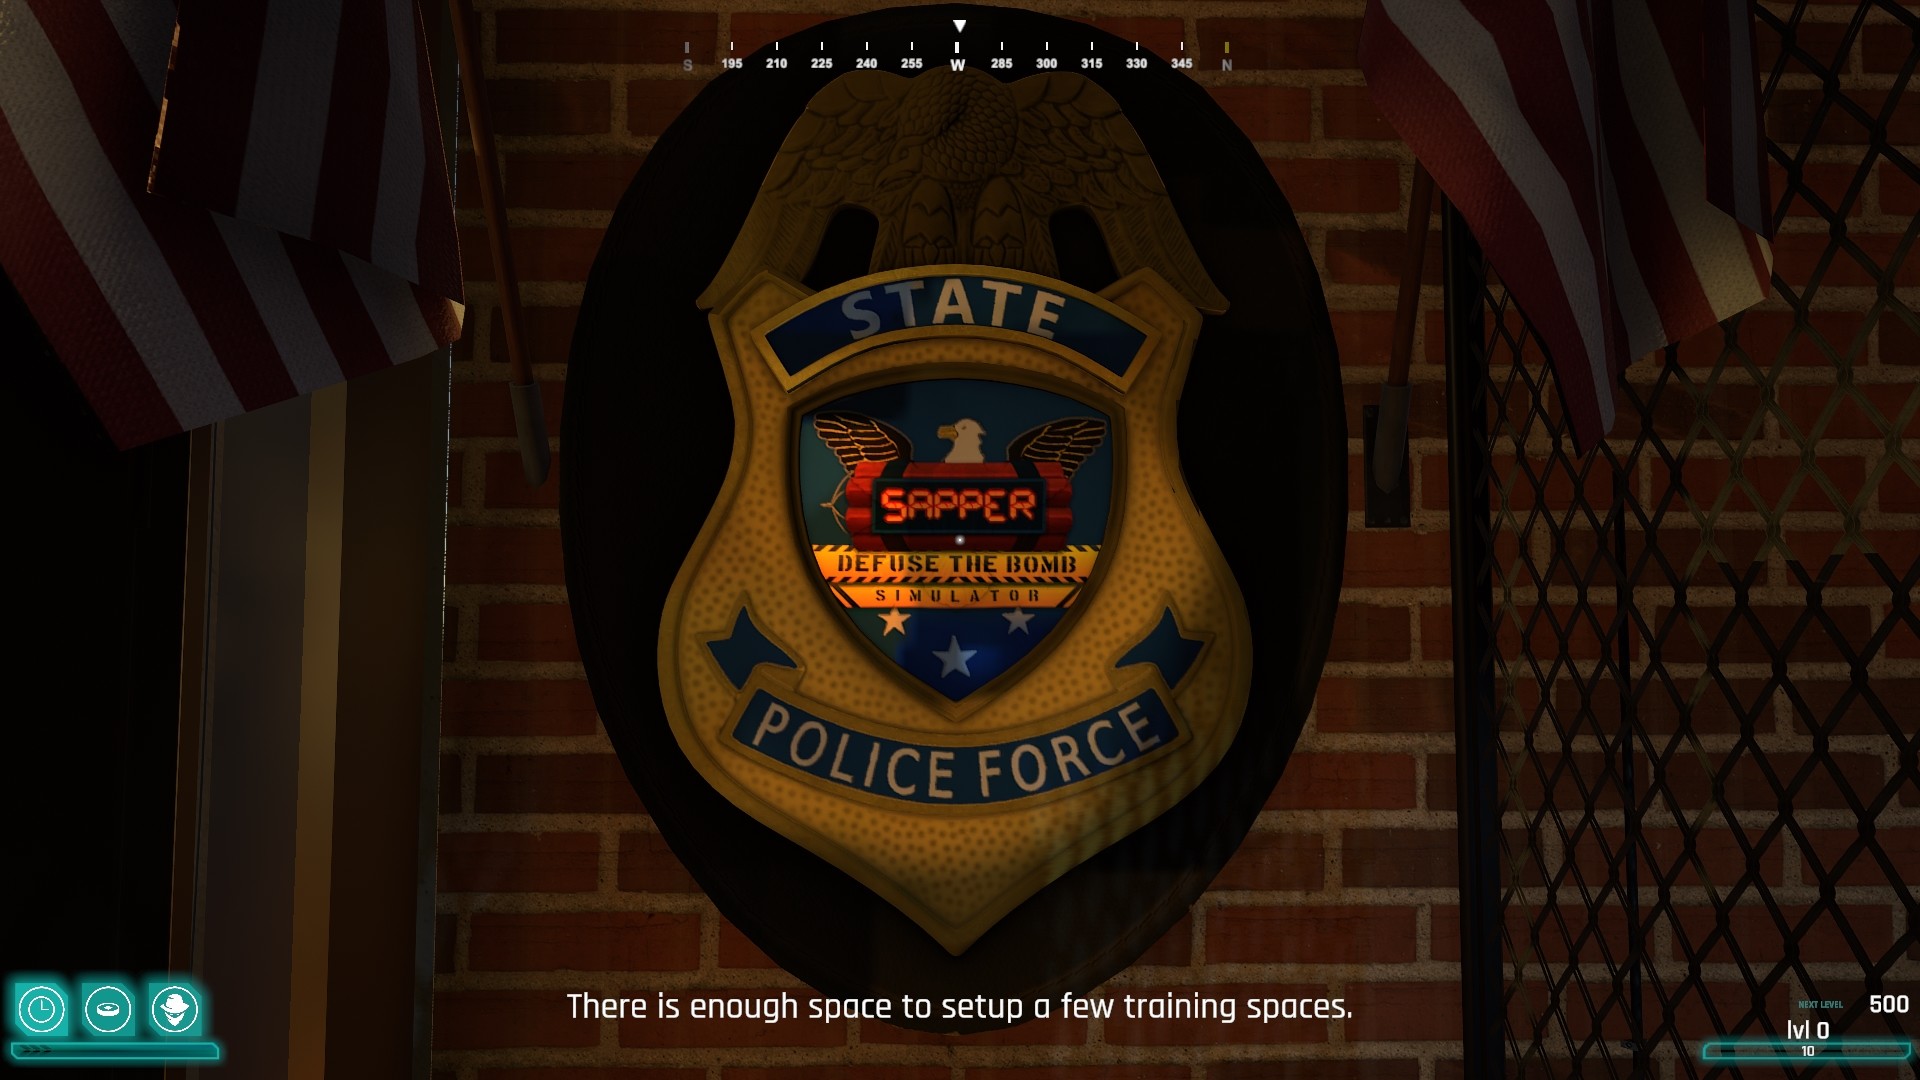 Sapper - Defuse The Bomb Simulator Free Download for PC